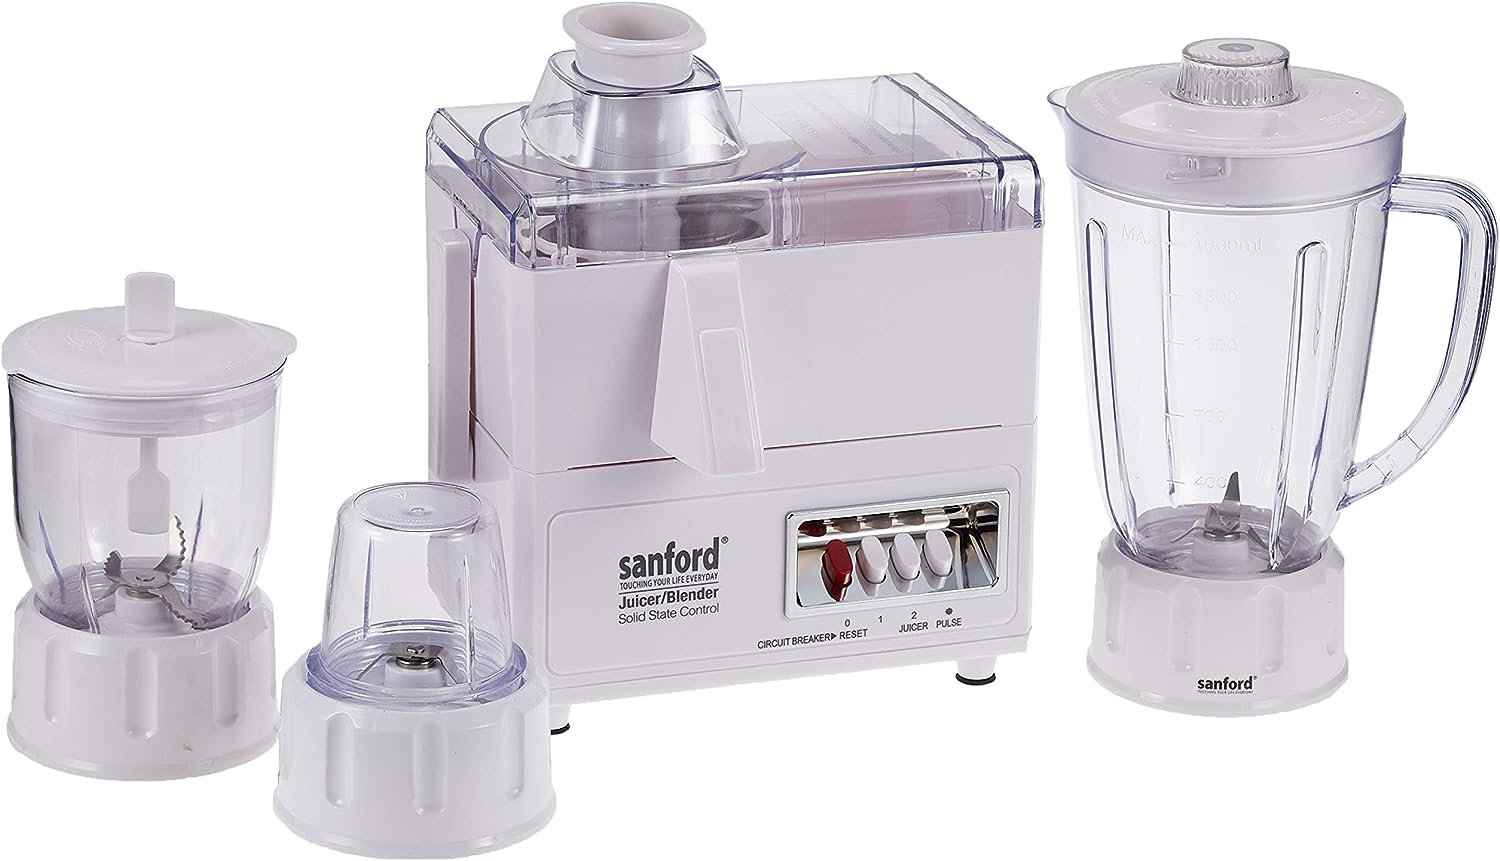 Sanford blender 4 * 1, 650 watts, SF5501 JB